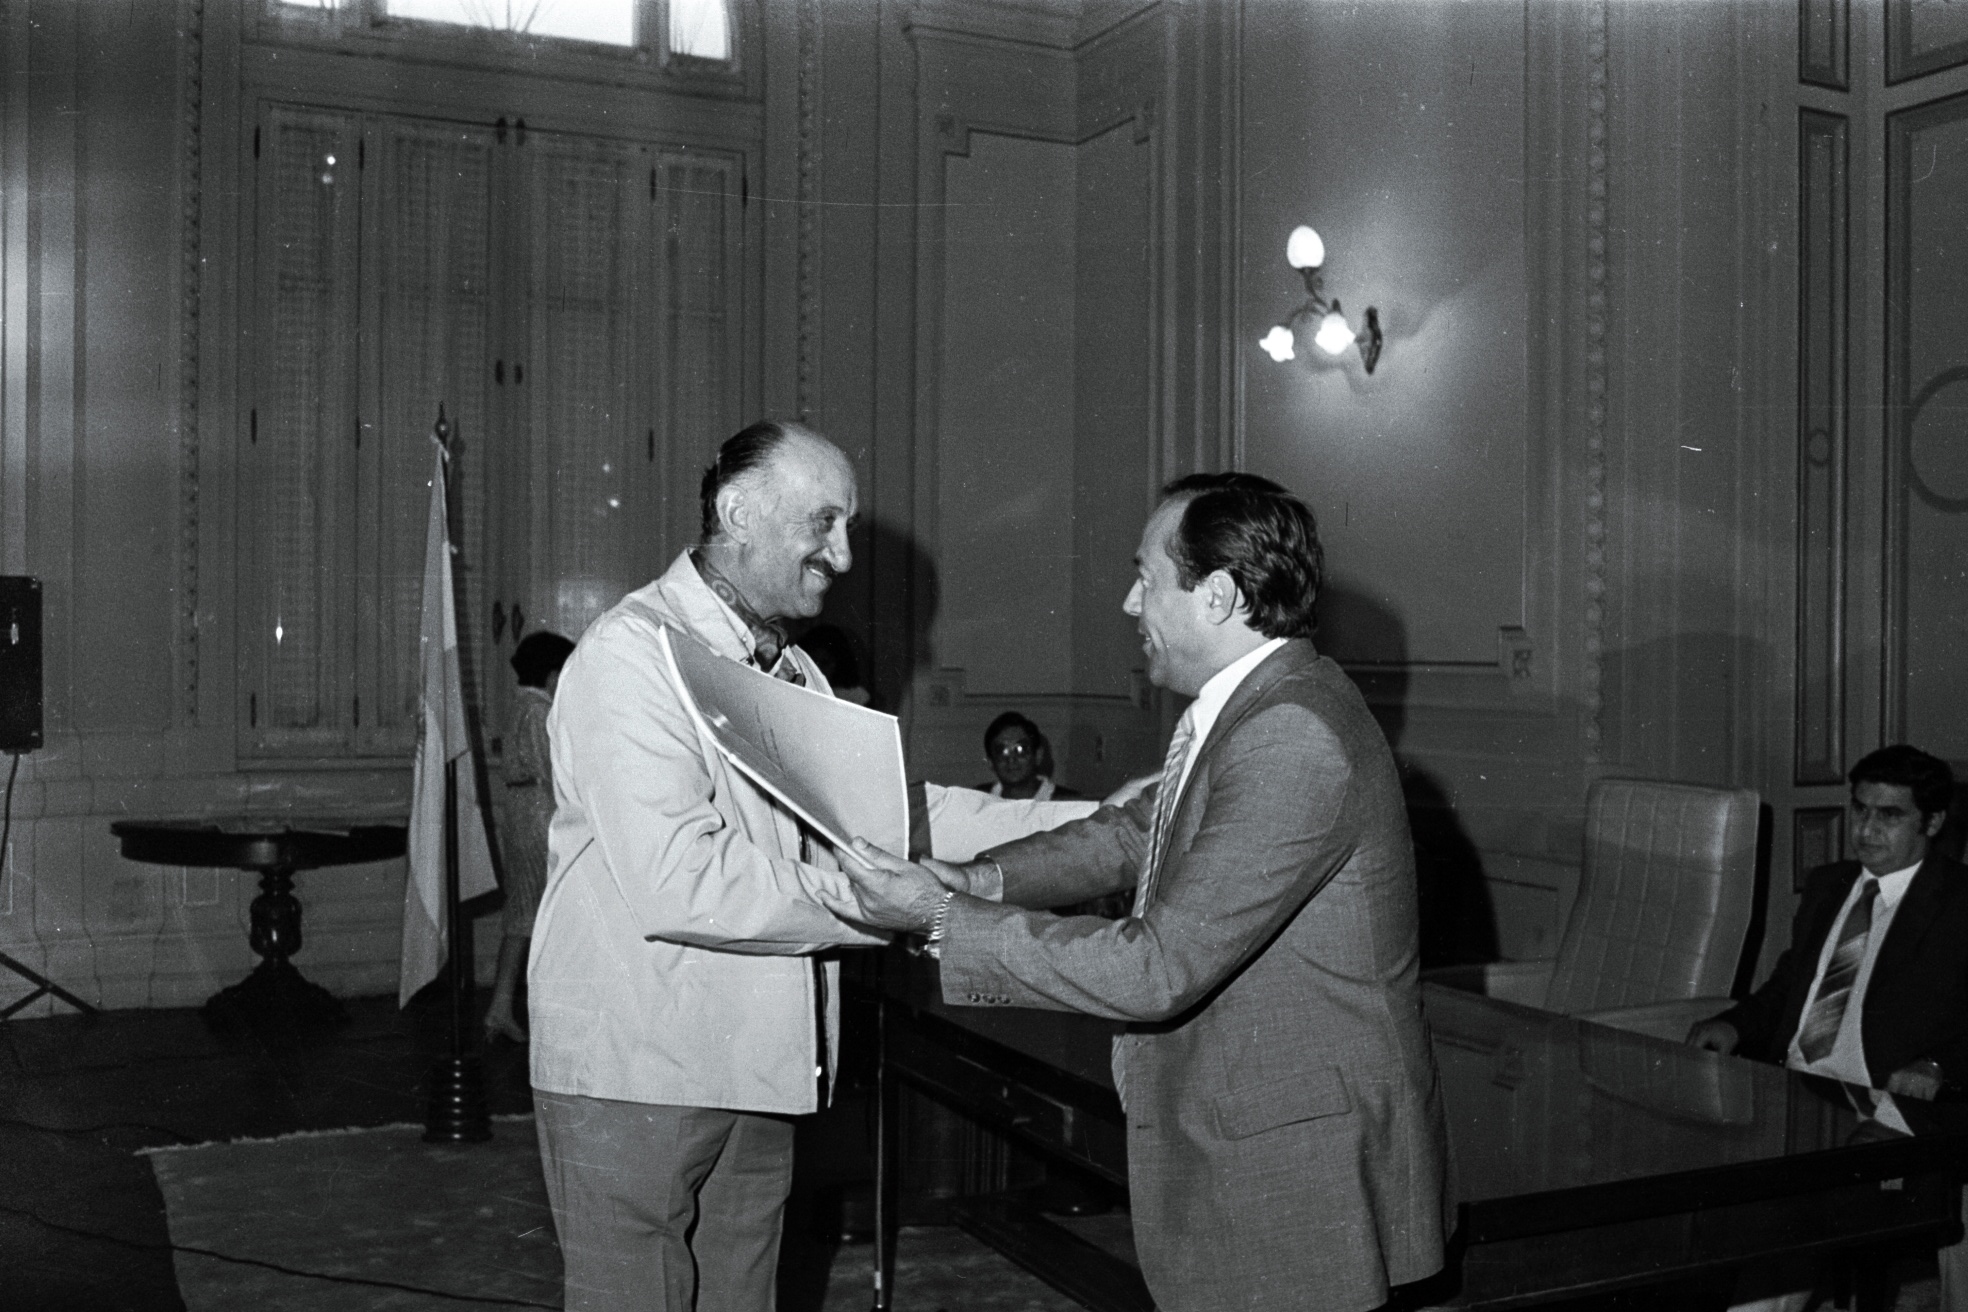 El 29-03-1985 el gobernador Adolfo Rodríguez Saá entrega silos a productores de la provincia durante un acto celebrado en el Salón Blanco de Casa de Gobierno.